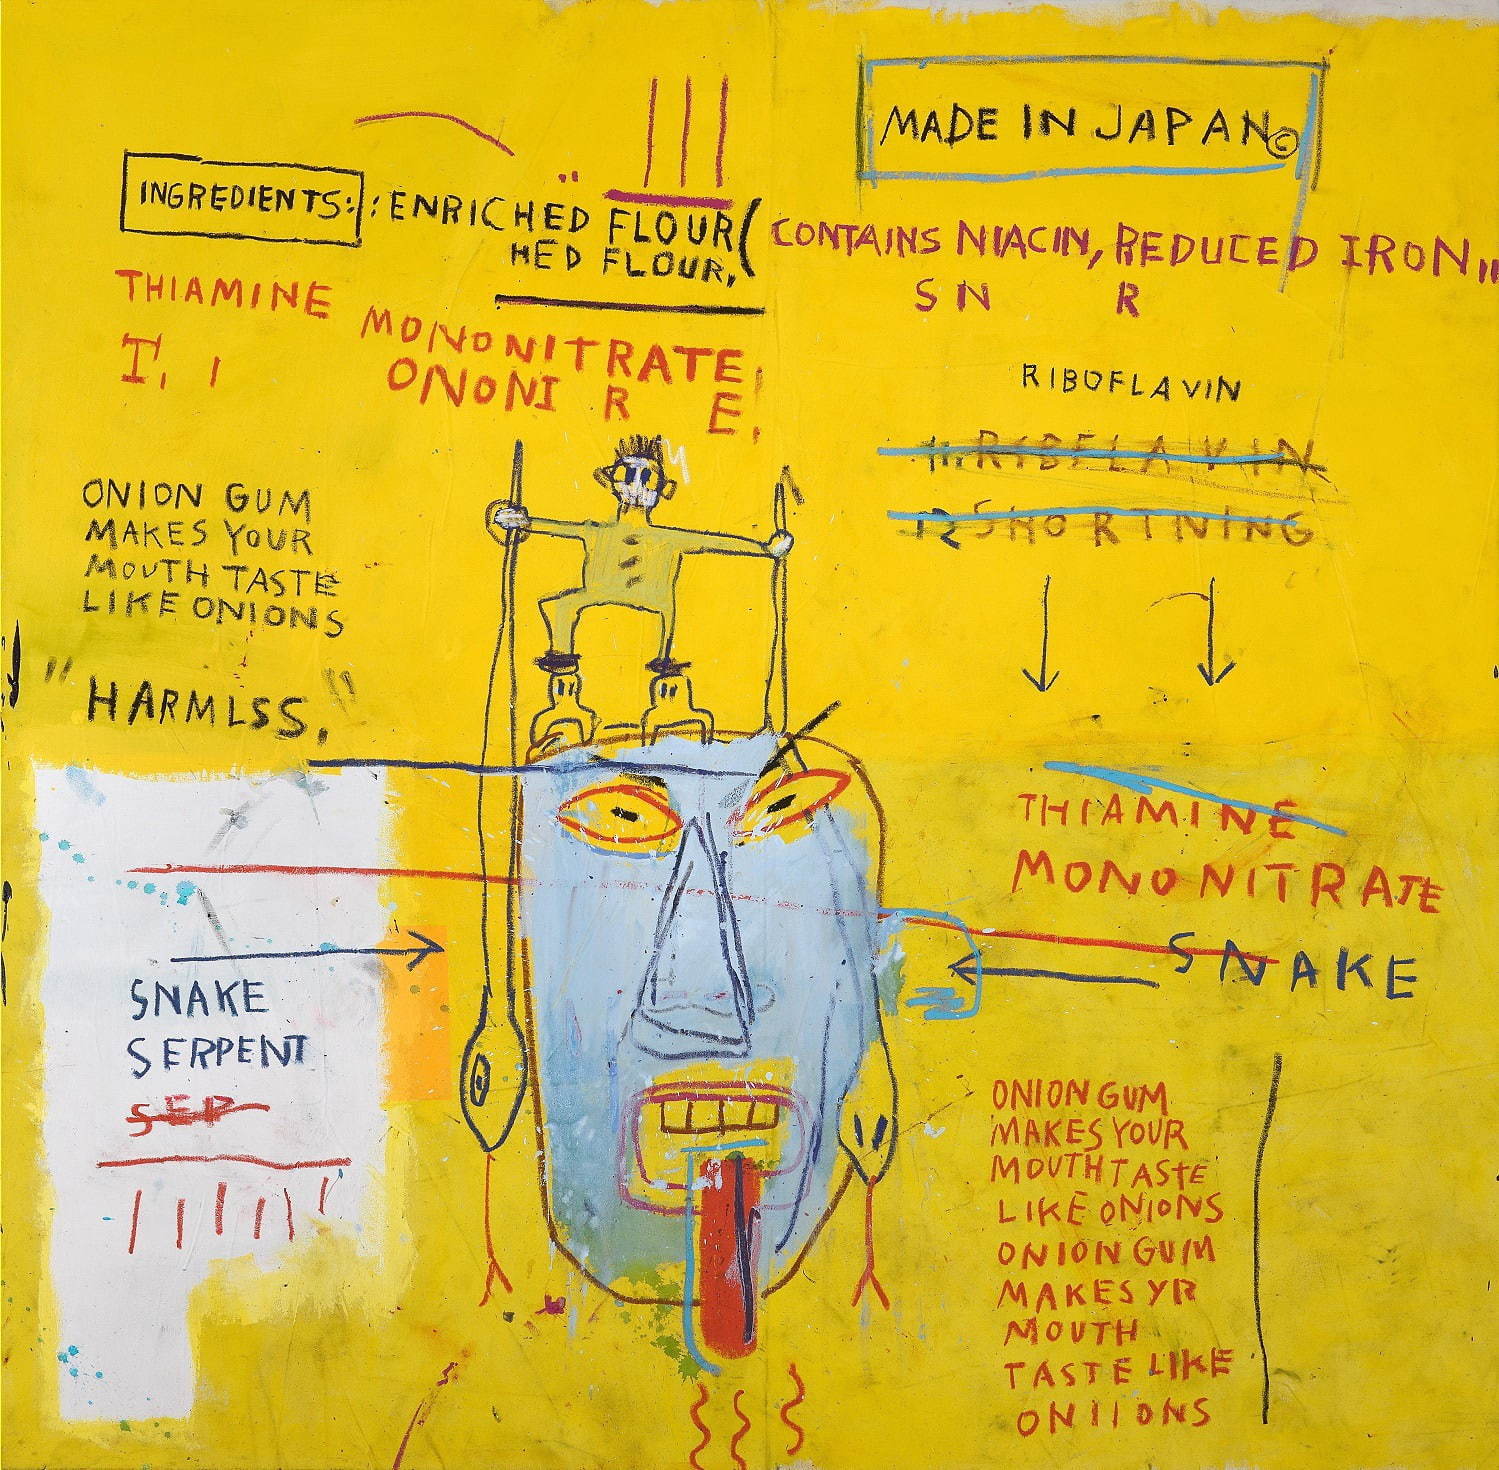 ジャン＝ミシェル・バスキア
Onion Gum, 1983
Acrylic and oilstick on canvas
177.8 x 203.2 x 5 cm
Courtesy Van de Weghe Fine Art, New York
Photo: Camerarts, New York
Artwork © Estate of Jean-Michel Basquiat.
Licensed by Artestar, New York